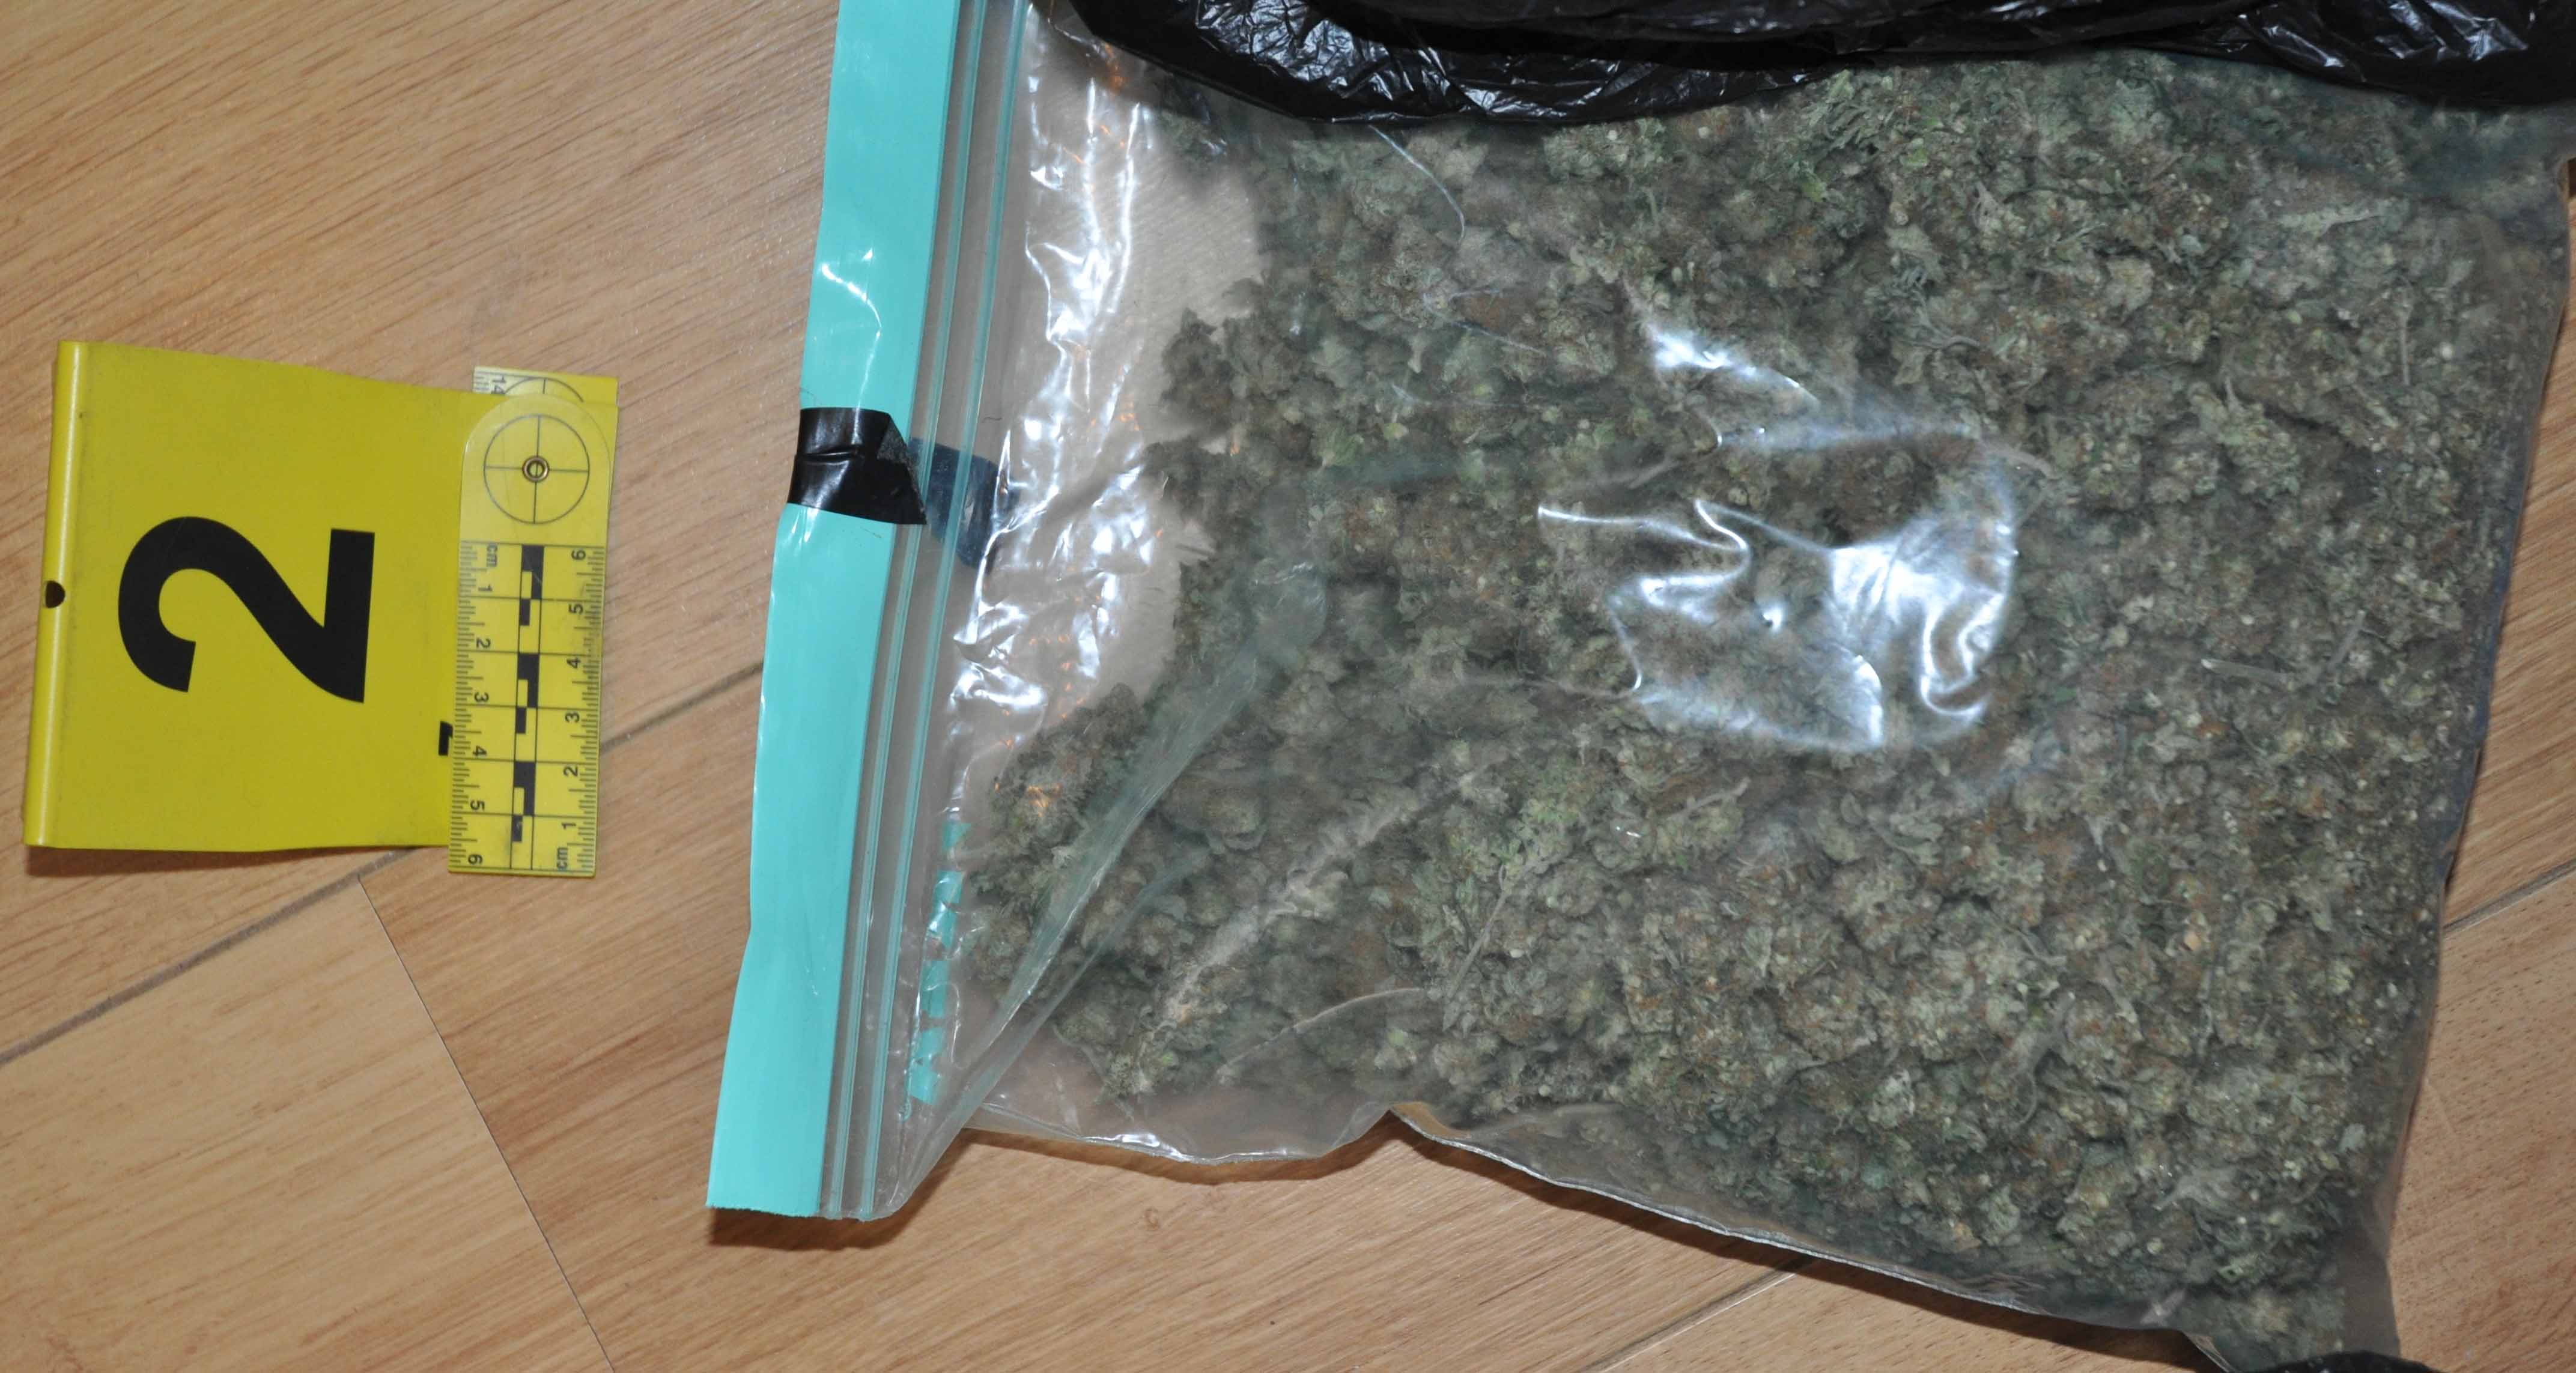 Полиција у стану ухапшеног пронашла 1,6 кг марихуане, око 40 грама кокаина, мању количину амфетамина и пиштољ